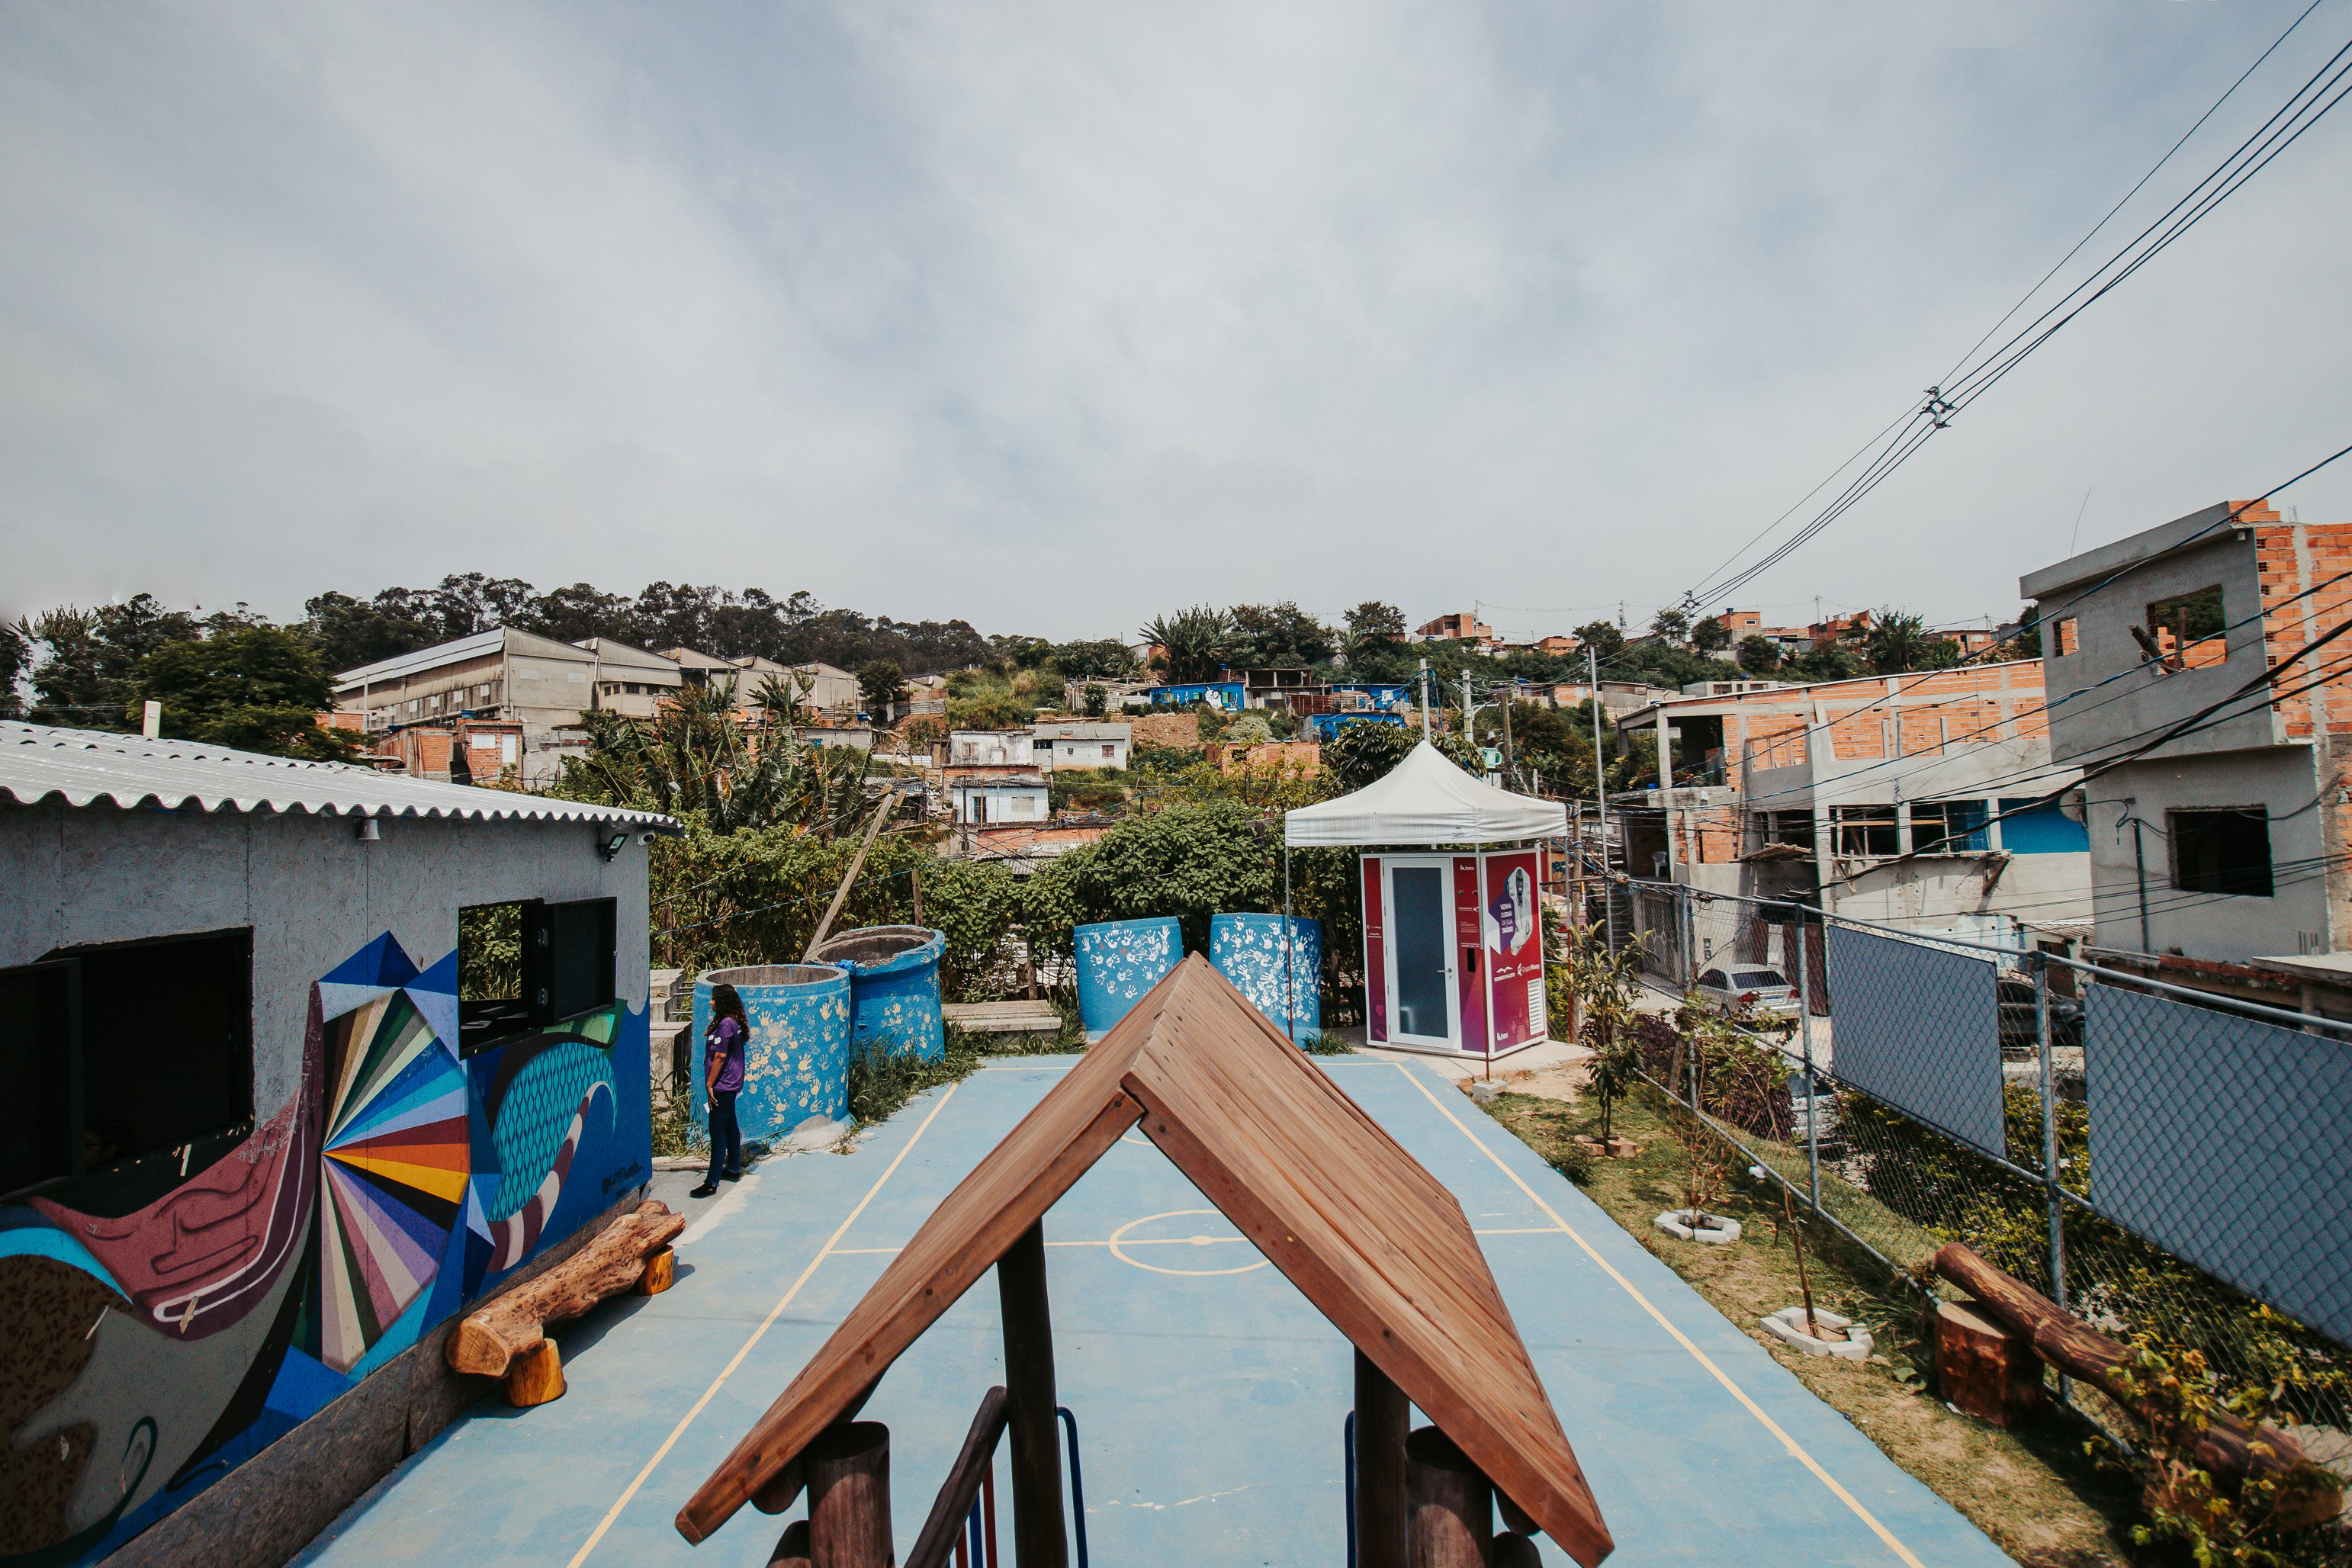  Bir favela hayal etmek